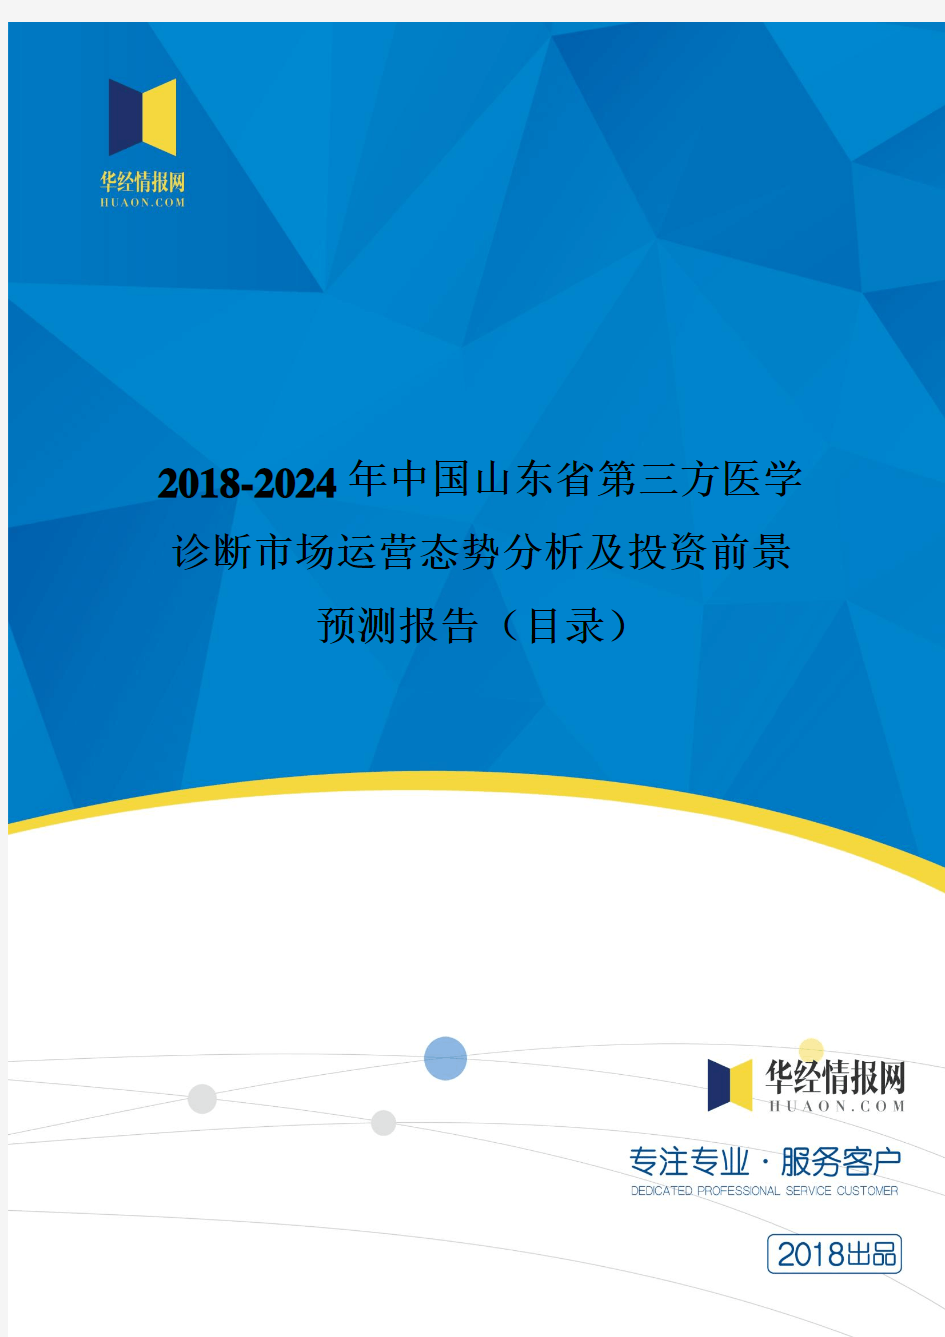 2018年中国山东省第三方医学诊断市场运营态势分析及投资前景预测(目录)